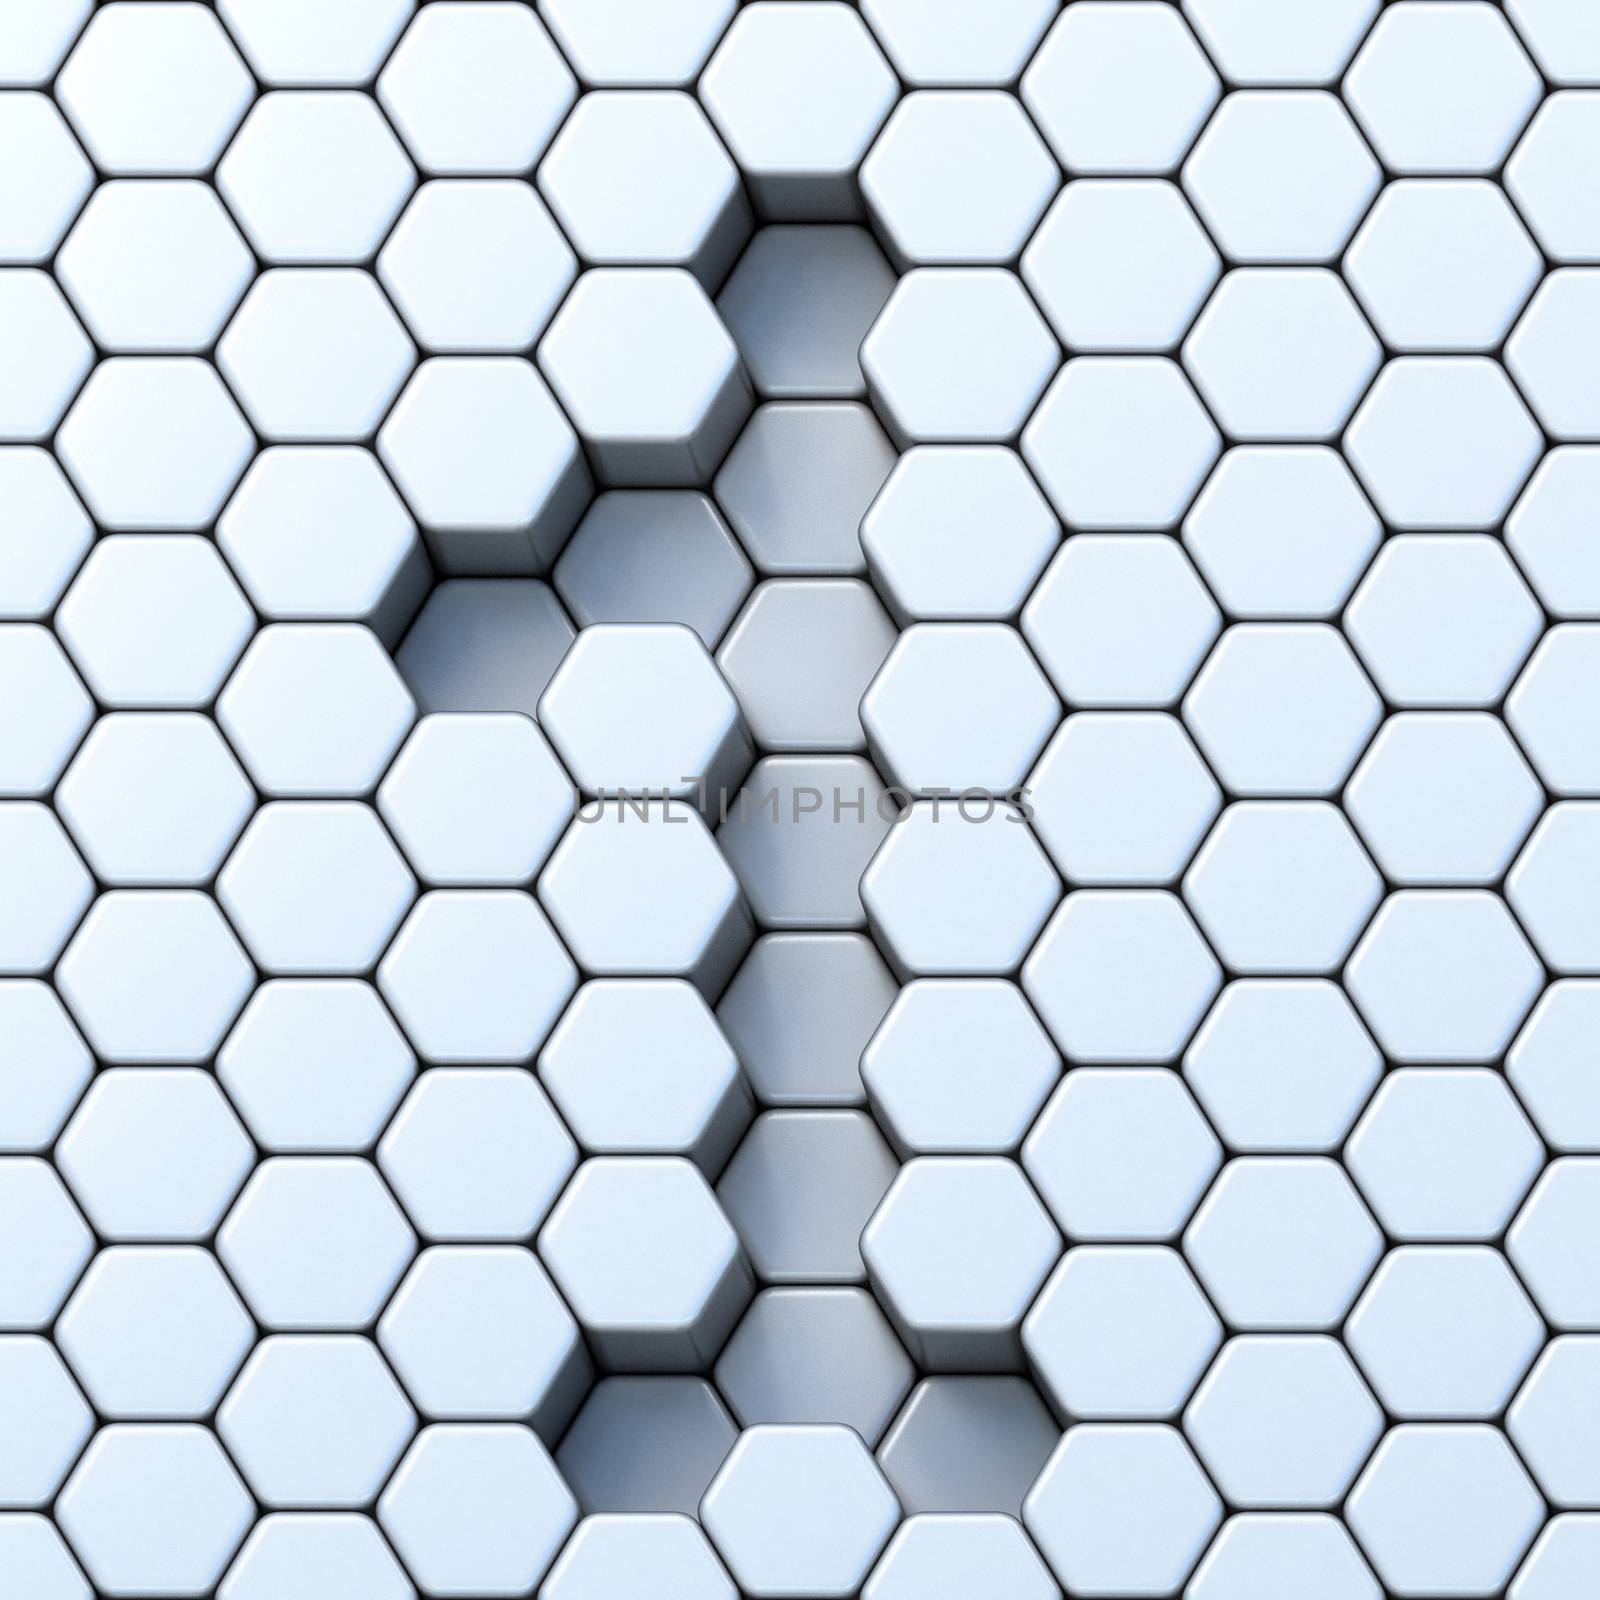 Hexagonal grid number ONE 1 3D render illustration